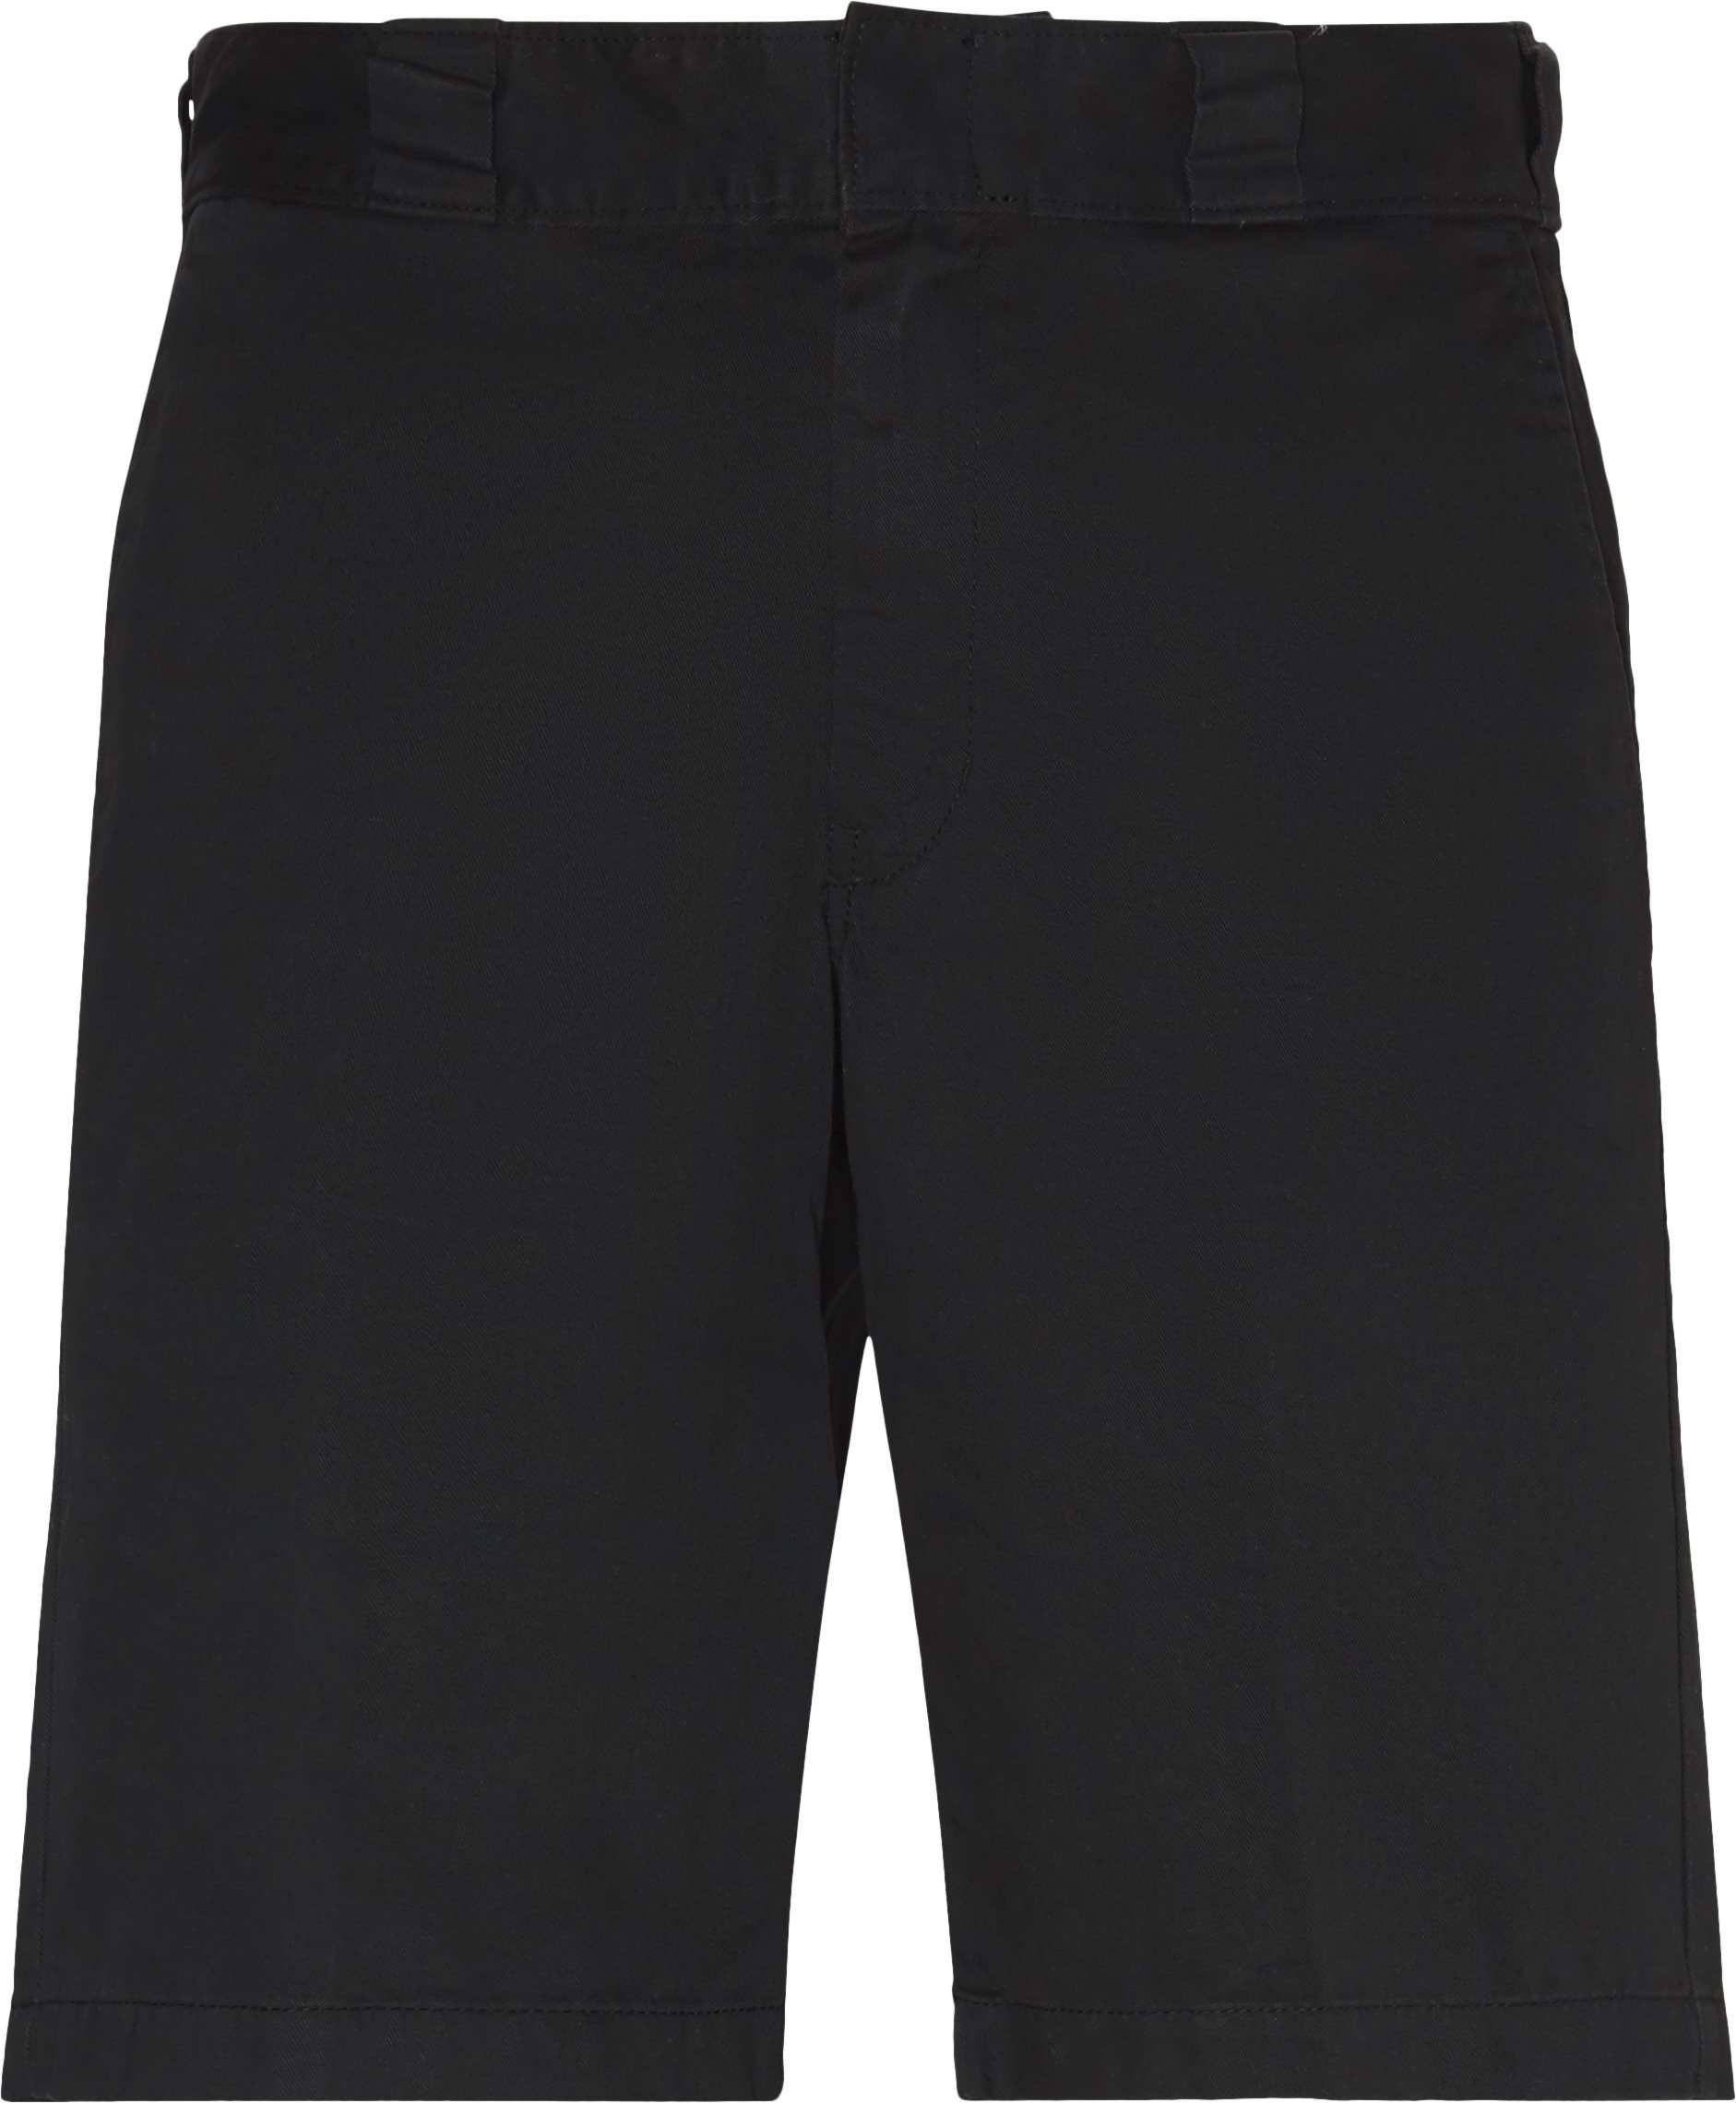 Vancleve Shorts - Shorts - Regular fit - Sort